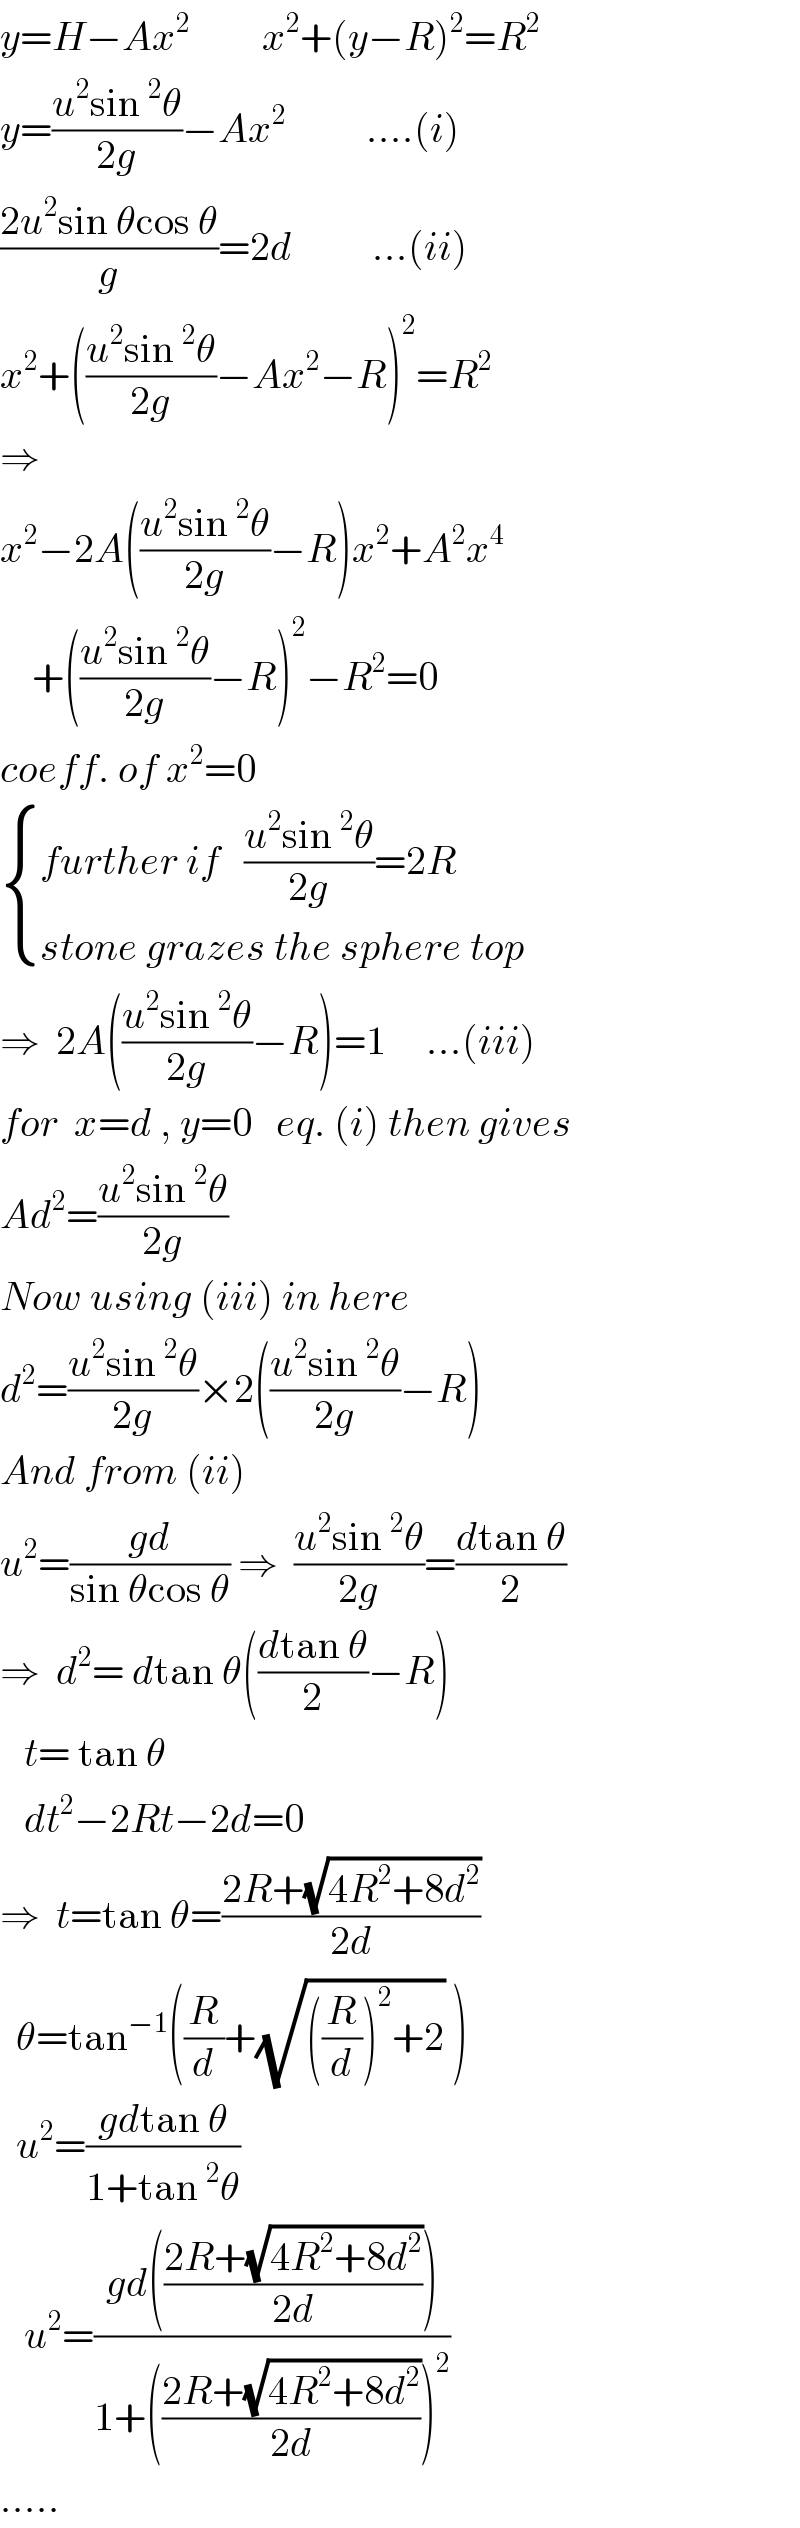 y=H−Ax^2          x^2 +(y−R)^2 =R^2   y=((u^2 sin^2 θ)/(2g))−Ax^2           ....(i)  ((2u^2 sin θcos θ)/g)=2d          ...(ii)  x^2 +(((u^2 sin^2 θ)/(2g))−Ax^2 −R)^2 =R^2   ⇒  x^2 −2A(((u^2 sin^2 θ)/(2g))−R)x^2 +A^2 x^4       +(((u^2 sin^2 θ)/(2g))−R)^2 −R^2 =0  coeff. of x^2 =0   { ((further if   ((u^2 sin^2 θ)/(2g))=2R)),((stone grazes the sphere top)) :}  ⇒  2A(((u^2 sin^2 θ)/(2g))−R)=1     ...(iii)  for  x=d , y=0   eq. (i) then gives  Ad^2 =((u^2 sin^2 θ)/(2g))  Now using (iii) in here  d^2 =((u^2 sin^2 θ)/(2g))×2(((u^2 sin^2 θ)/(2g))−R)  And from (ii)  u^2 =((gd)/(sin θcos θ)) ⇒  ((u^2 sin^2 θ)/(2g))=((dtan θ)/2)  ⇒  d^2 = dtan θ(((dtan θ)/2)−R)     t= tan θ     dt^2 −2Rt−2d=0  ⇒  t=tan θ=((2R+(√(4R^2 +8d^2 )))/(2d))    θ=tan^(−1) ((R/d)+(√(((R/d))^2 +2)) )    u^2 =((gdtan θ)/(1+tan^2 θ))     u^2 =((gd(((2R+(√(4R^2 +8d^2 )))/(2d))))/(1+(((2R+(√(4R^2 +8d^2 )))/(2d)))^2 ))  .....  